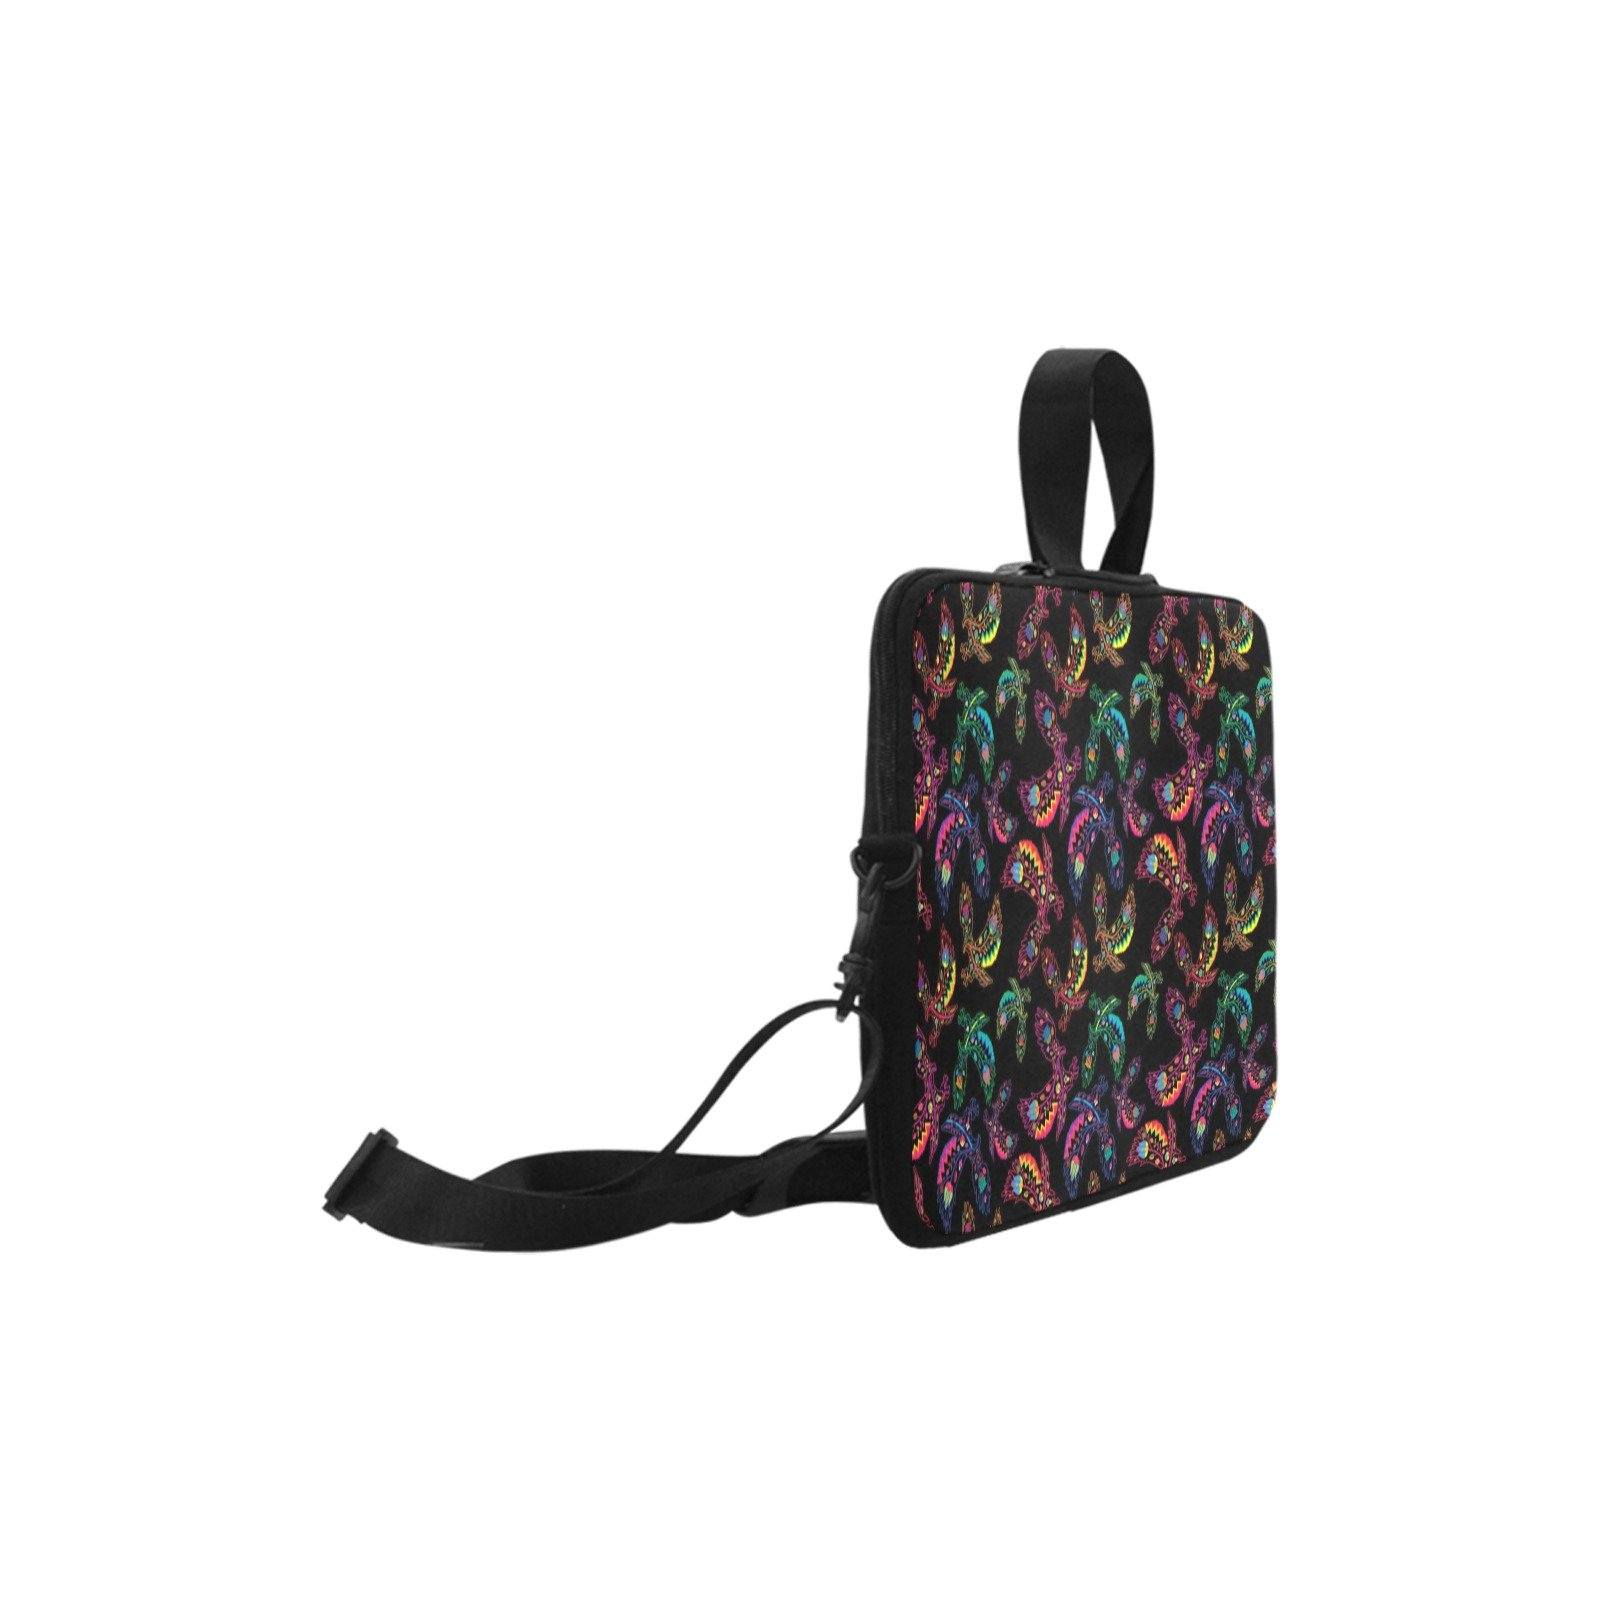 Floral Eagle Laptop Handbags 10" bag e-joyer 